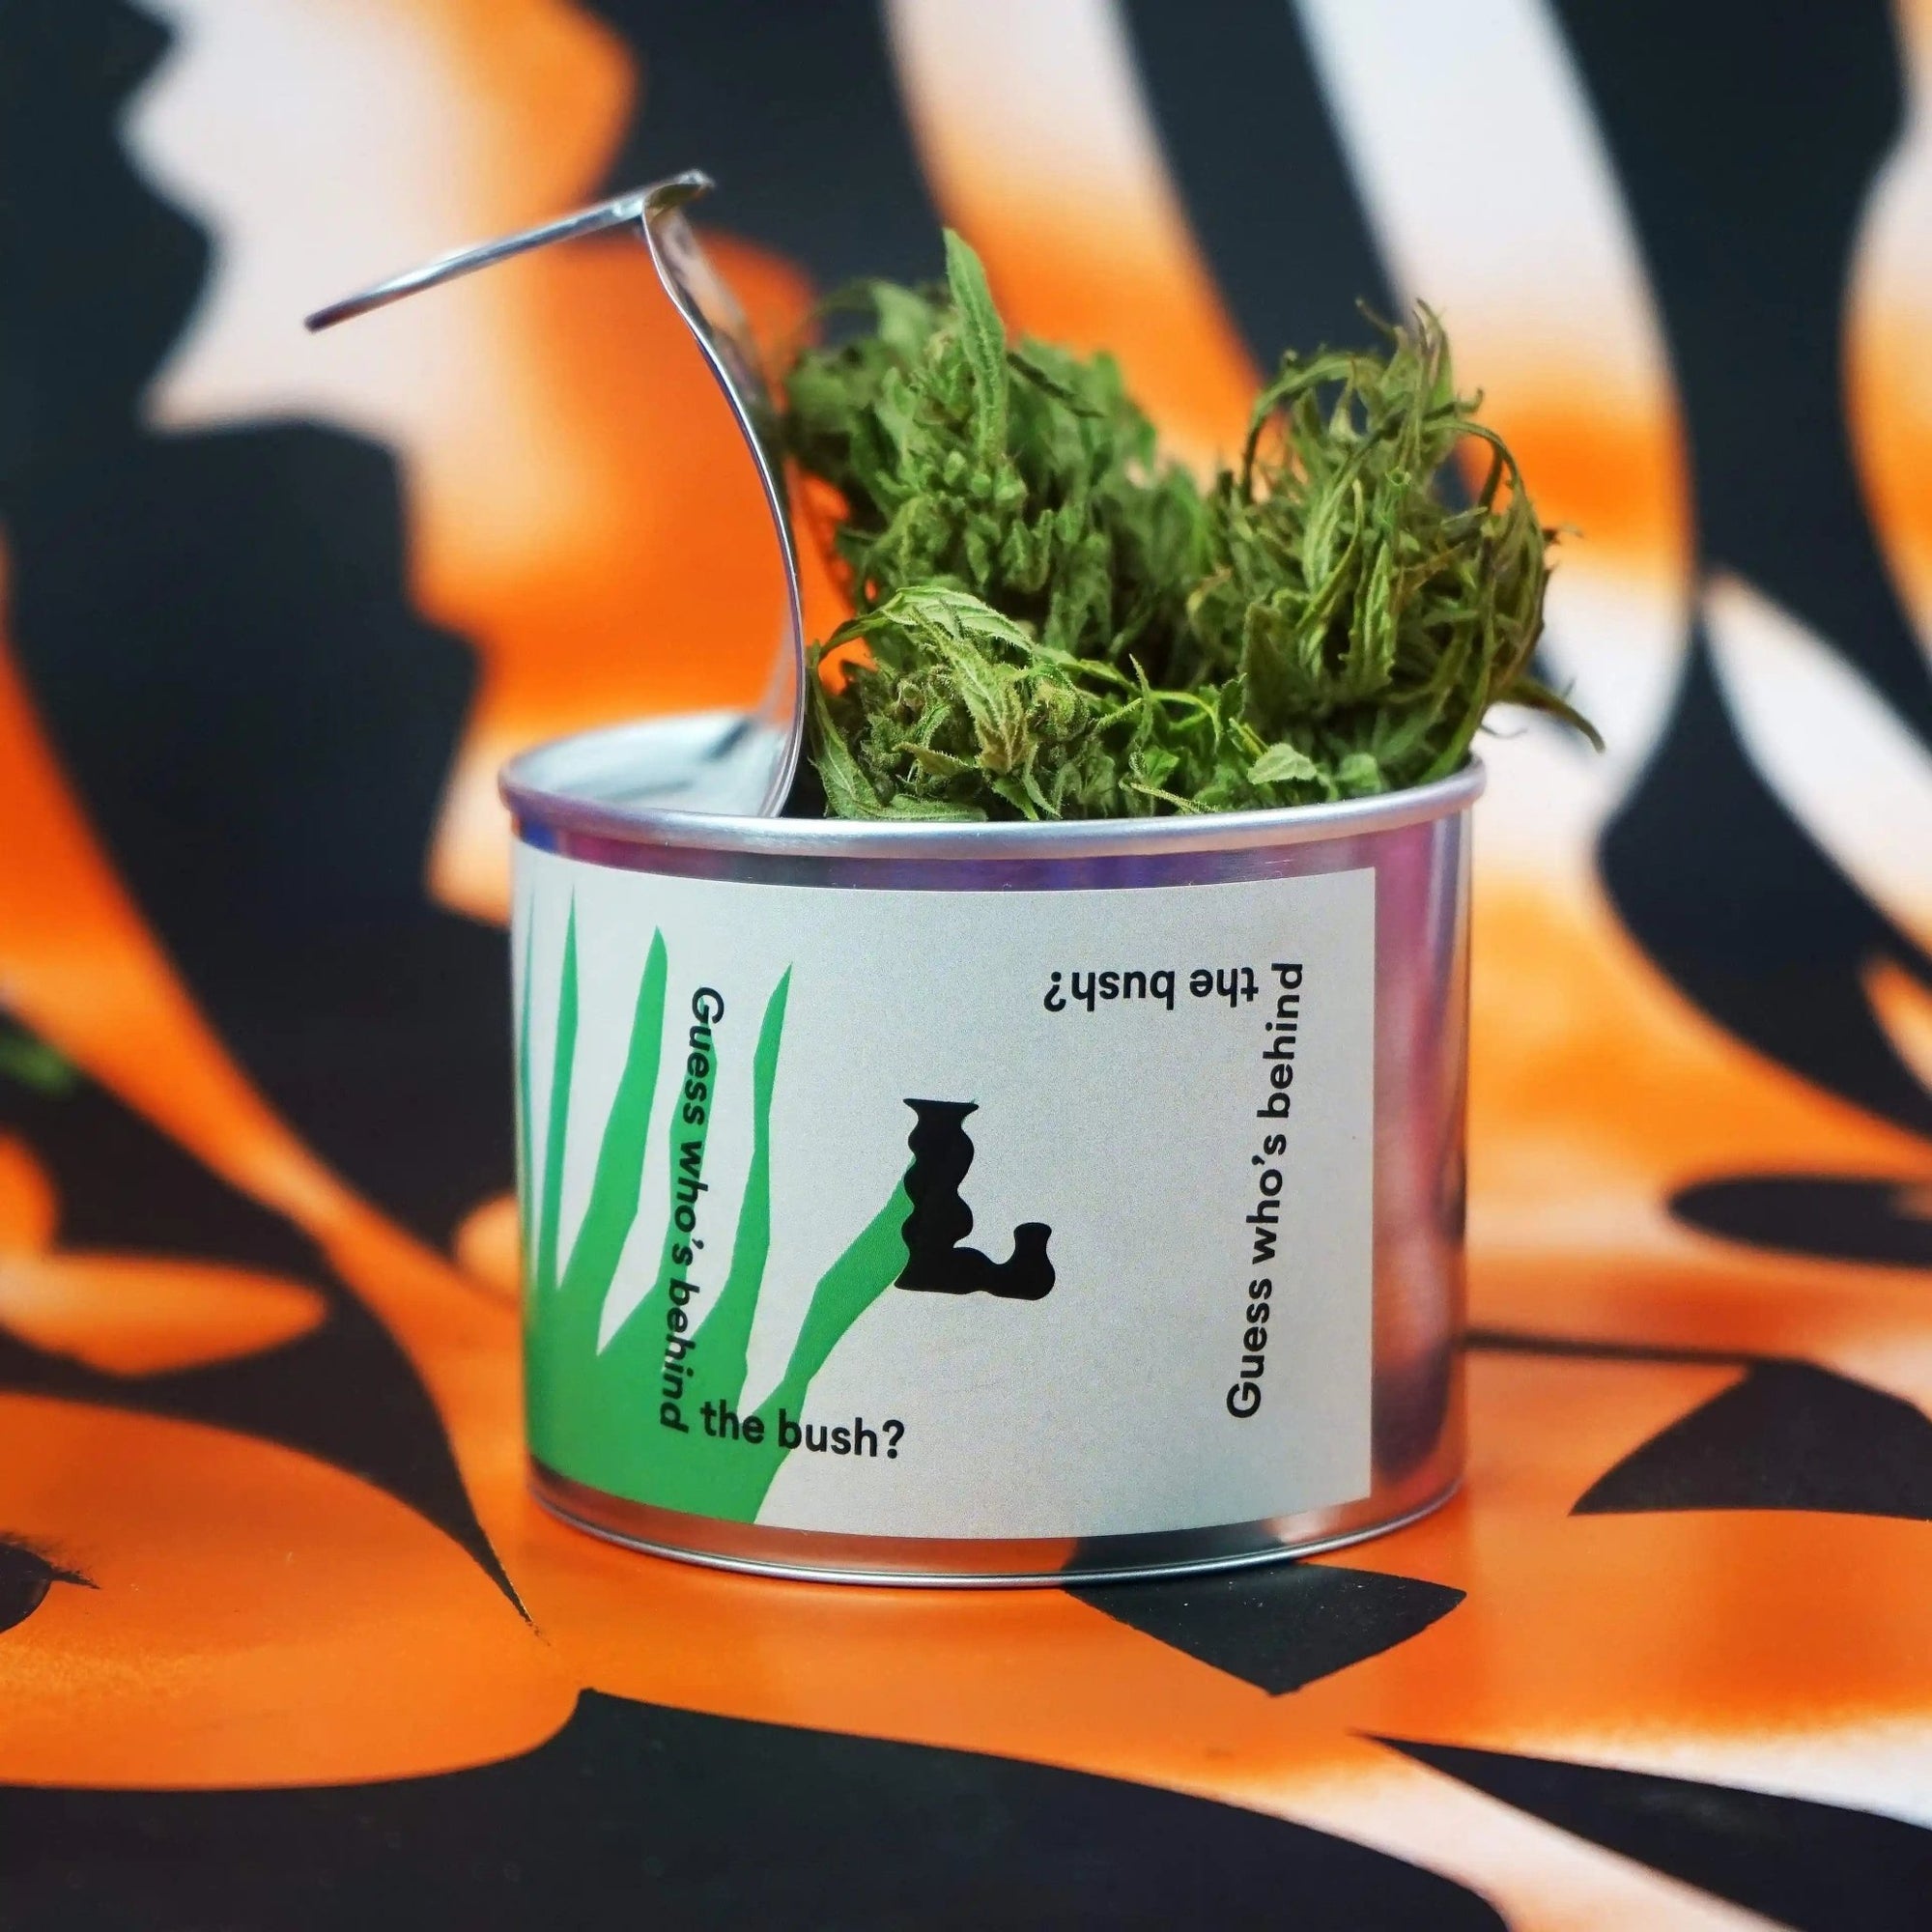 Kanapių arbata - Lynx Tea - Lynx Cannabis